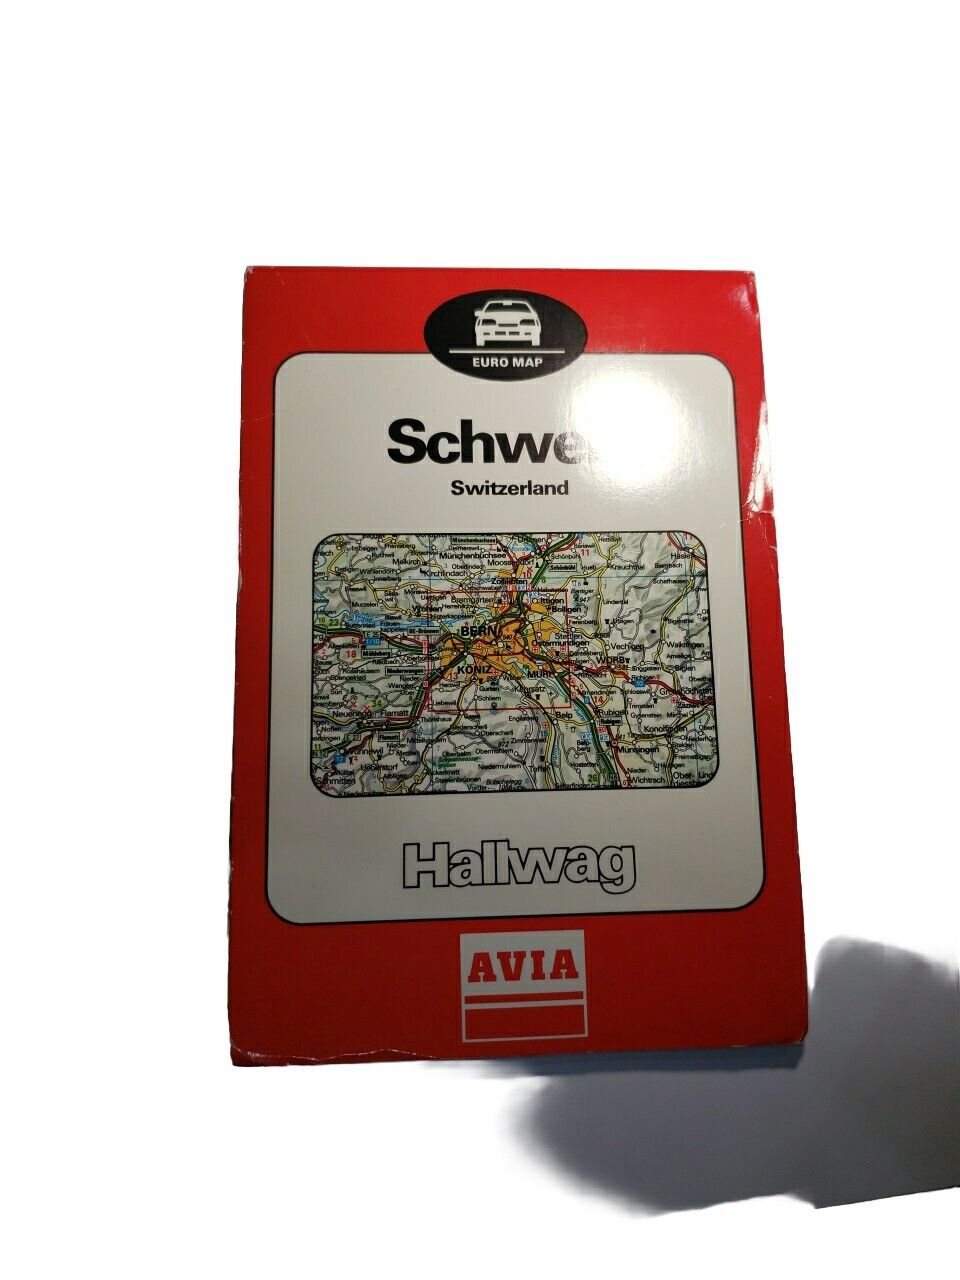 Vintage Roadmap Schweiz Switzerland Hallwag 1996 Motorways Distoguide Map Guide